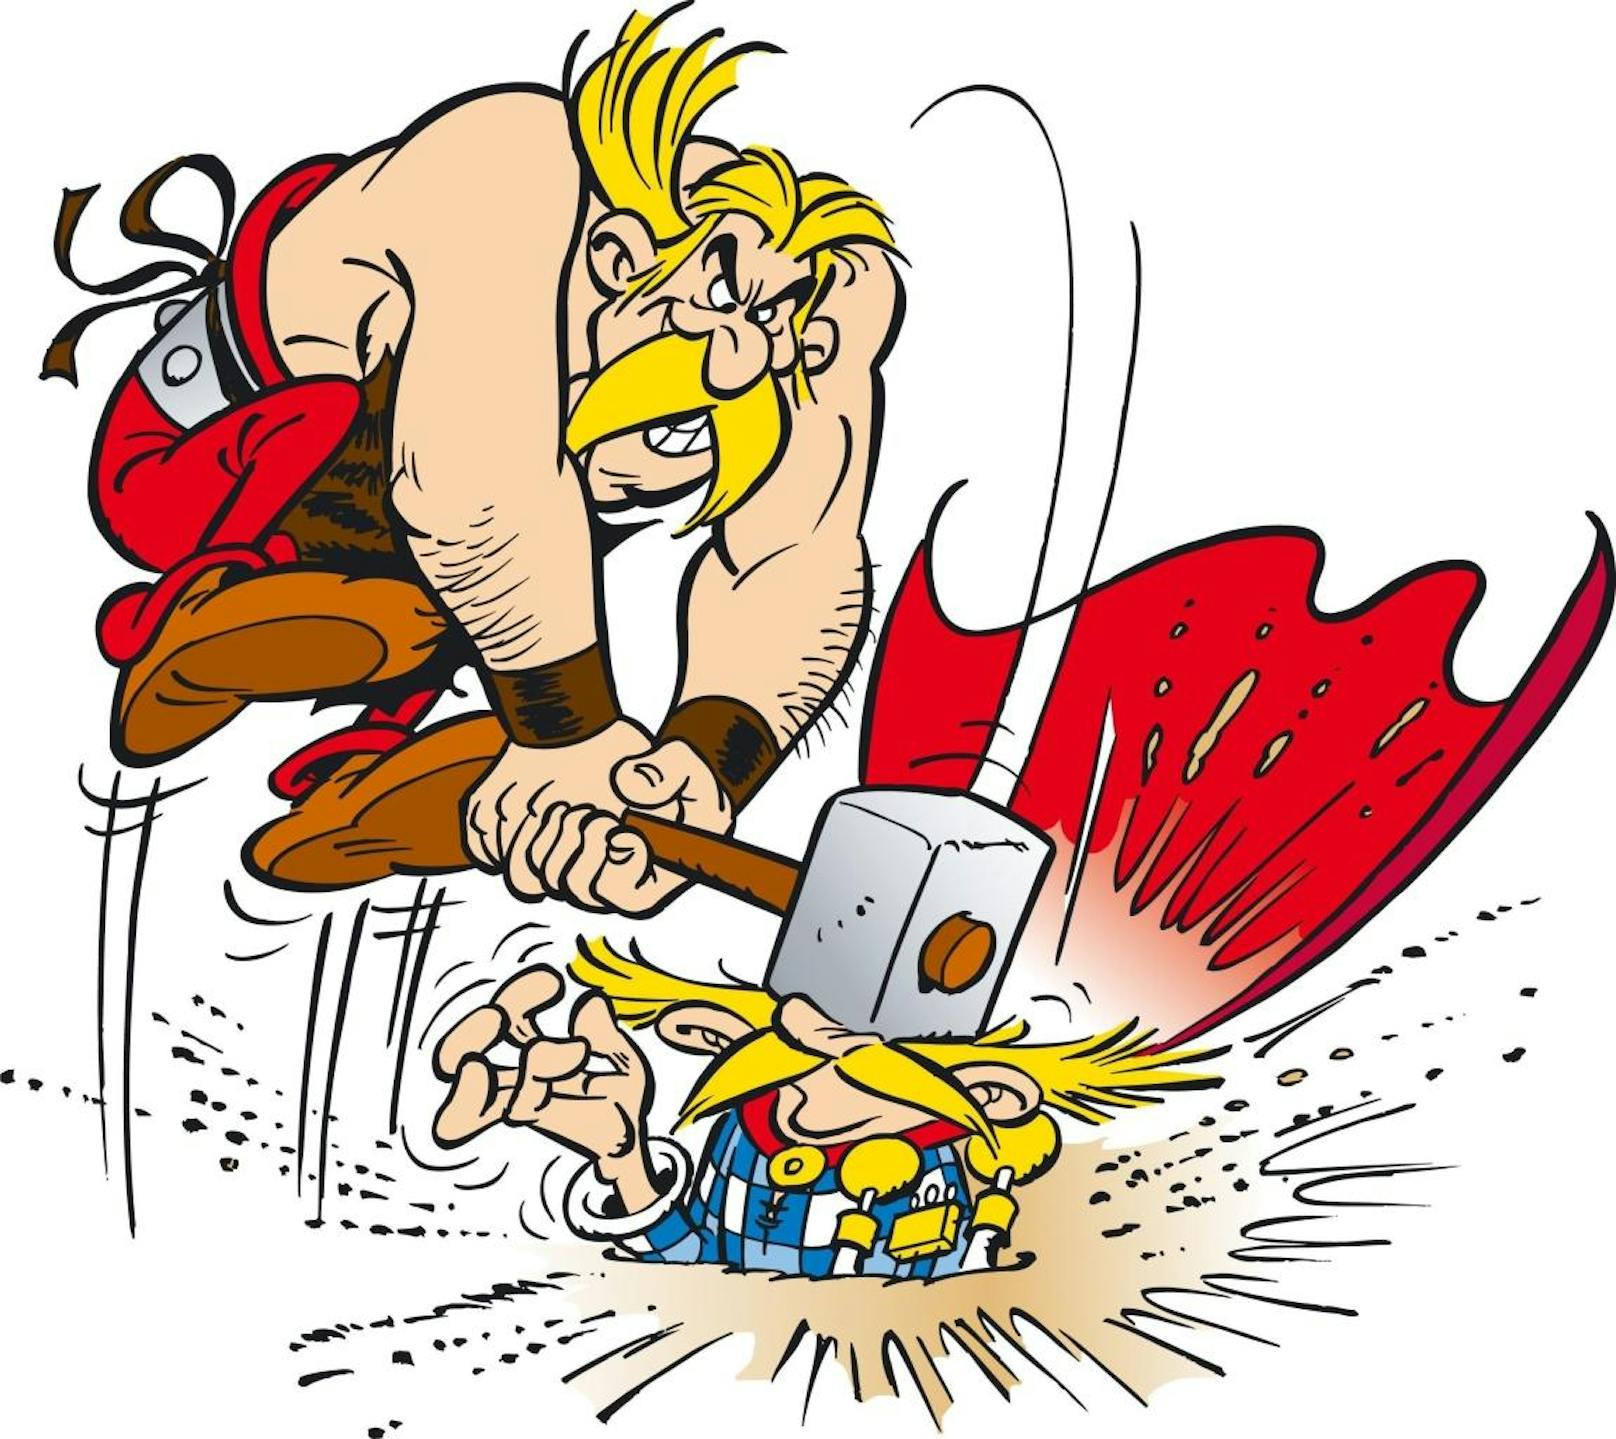 Nach dem Grund gefragt, warum sein Held Asterix heißt, soll René Goscinny geantwortet haben, dass der Anfangsbuchstabe A einen "unleugbaren Vorteil in der alphabetischen Aufstellung in einem späteren Comic-Lexikon mit sich bringt".